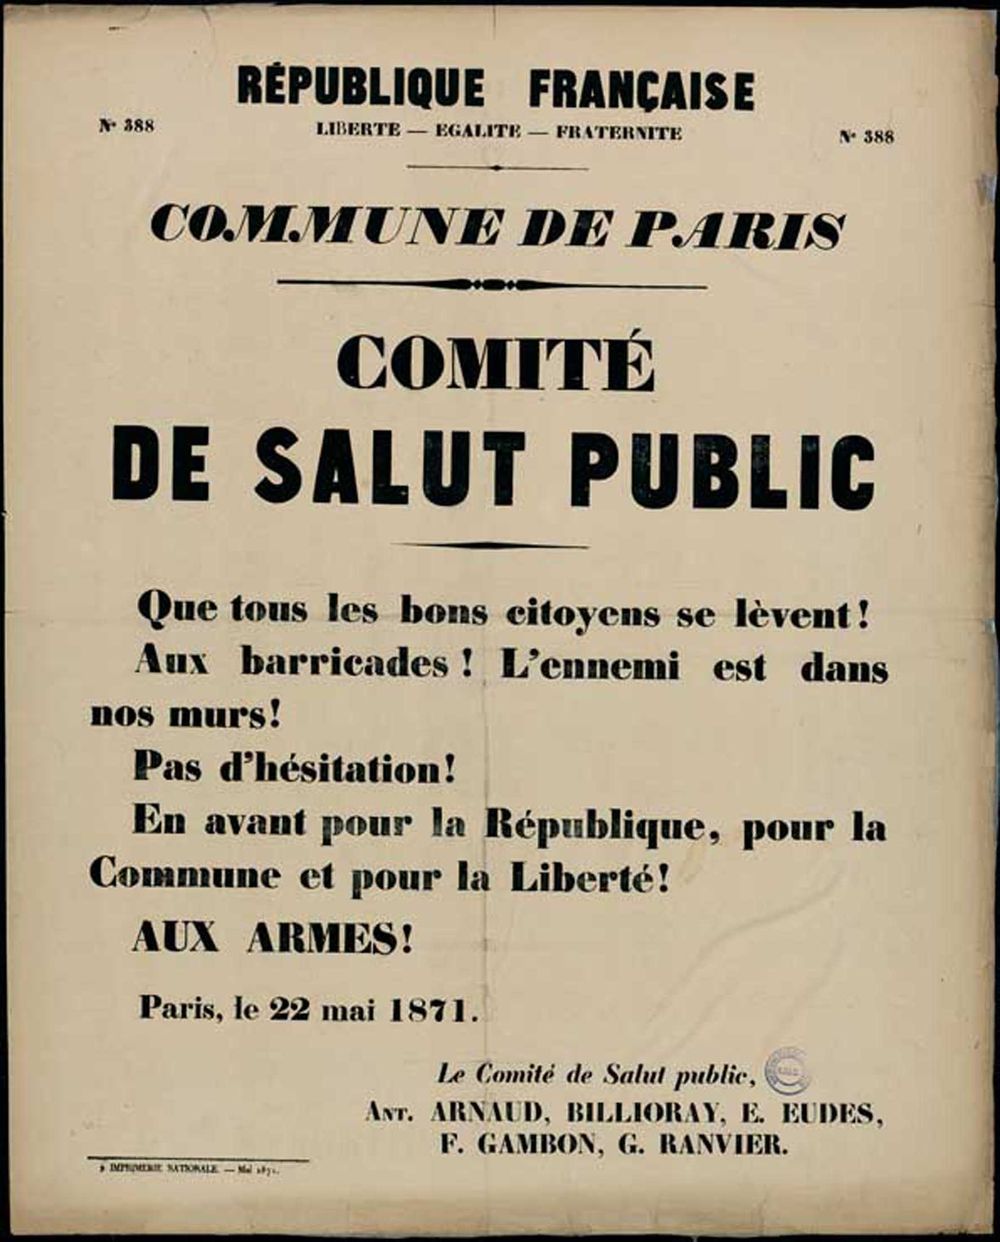 Affiche de la Commune de Paris N° 388 du 22 mai 1871 - Appel au combat